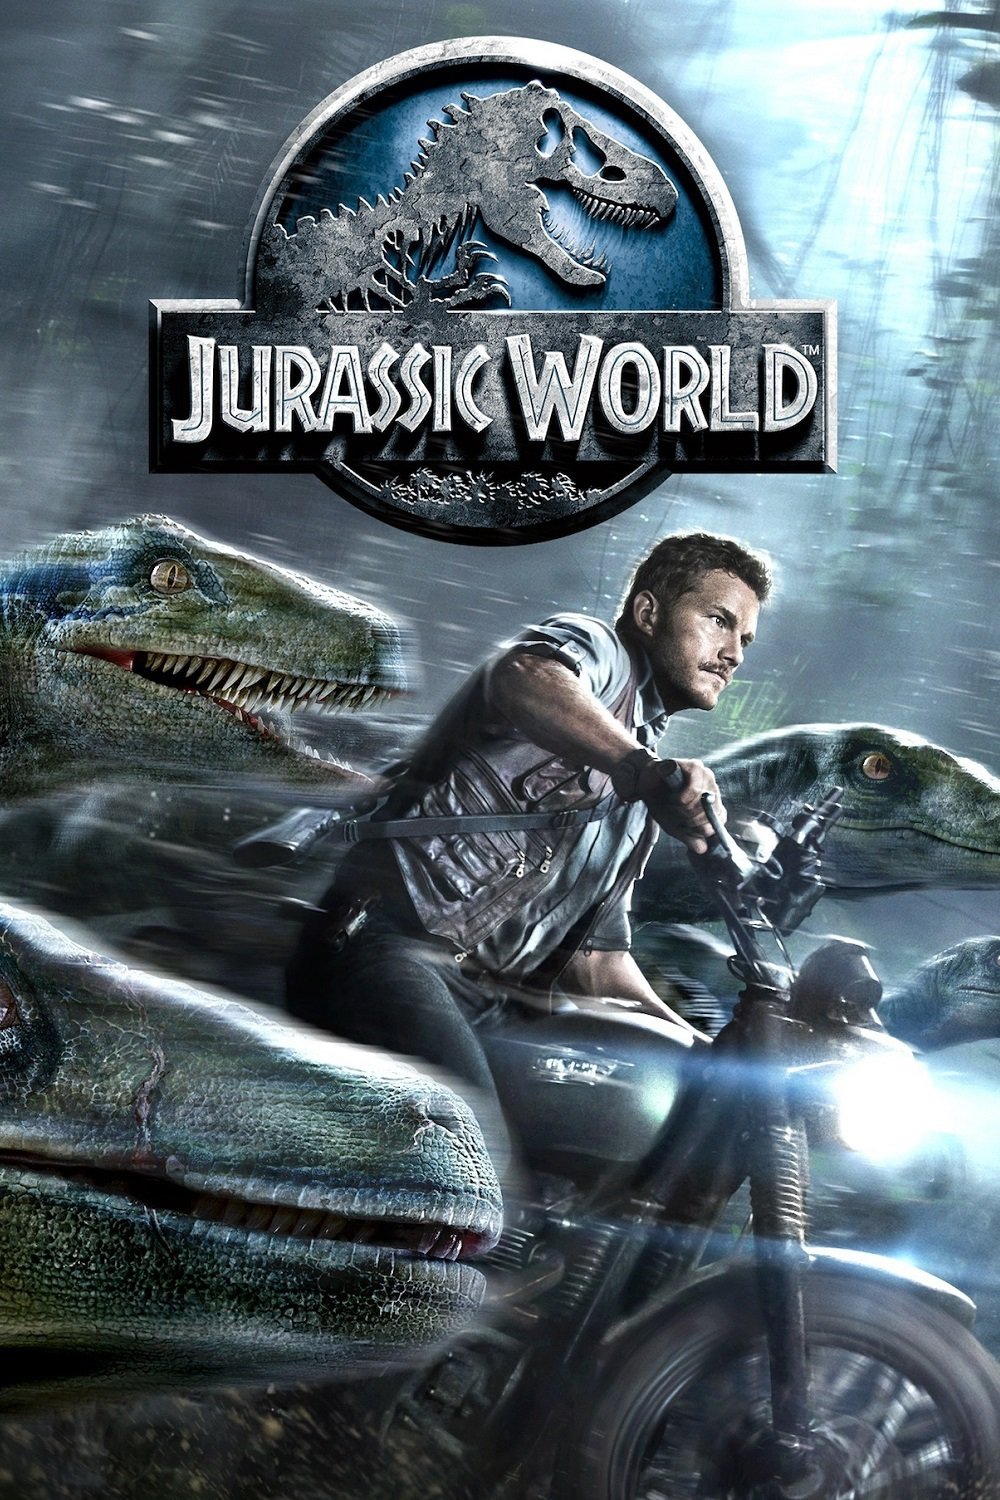 Plakat von "Jurassic World"